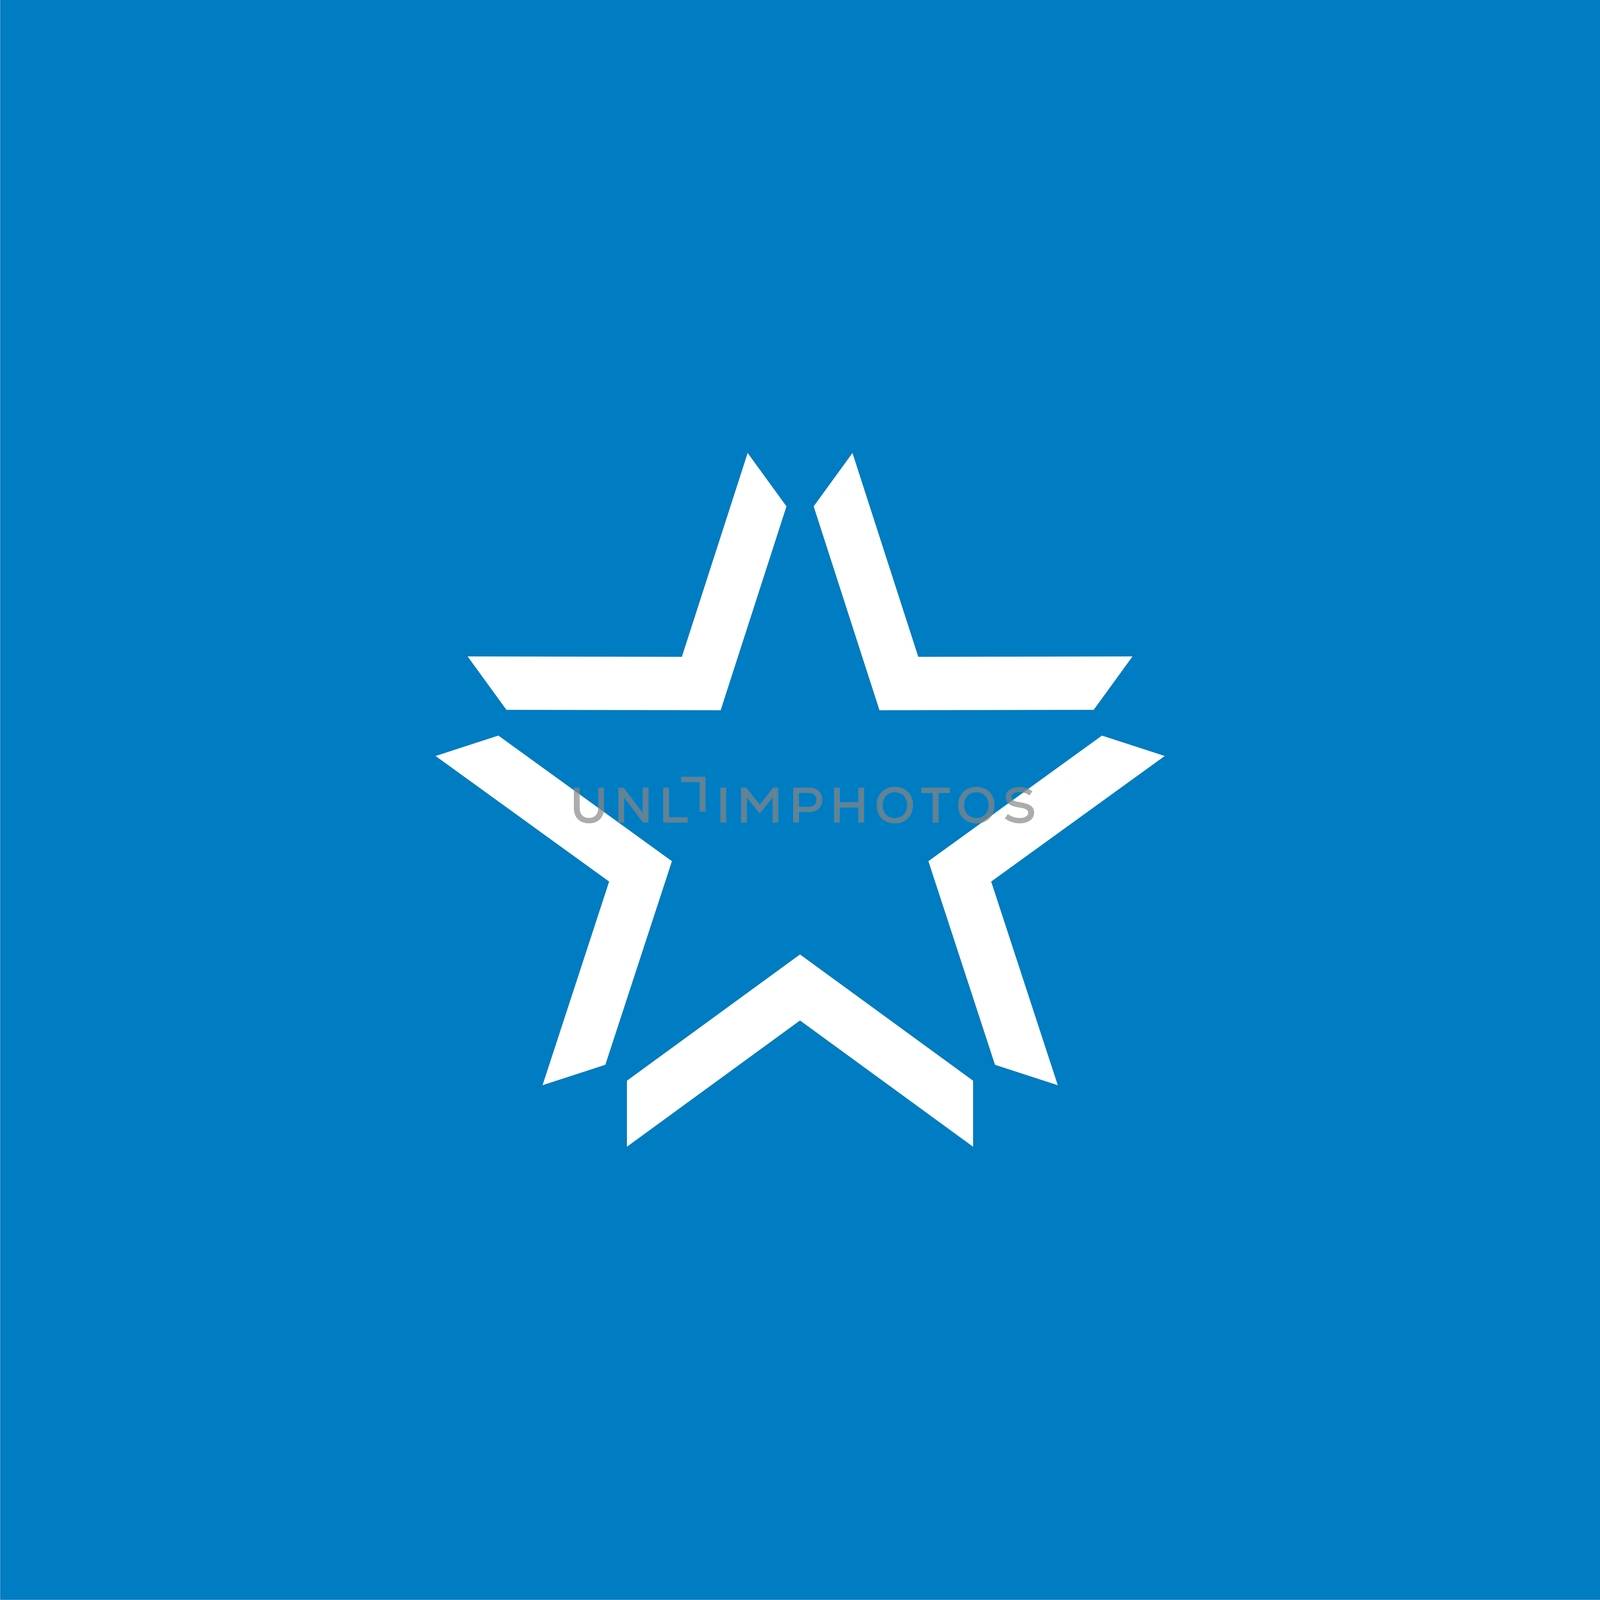 Monochrome Star vector Logo Template Illustration Design EPS 10